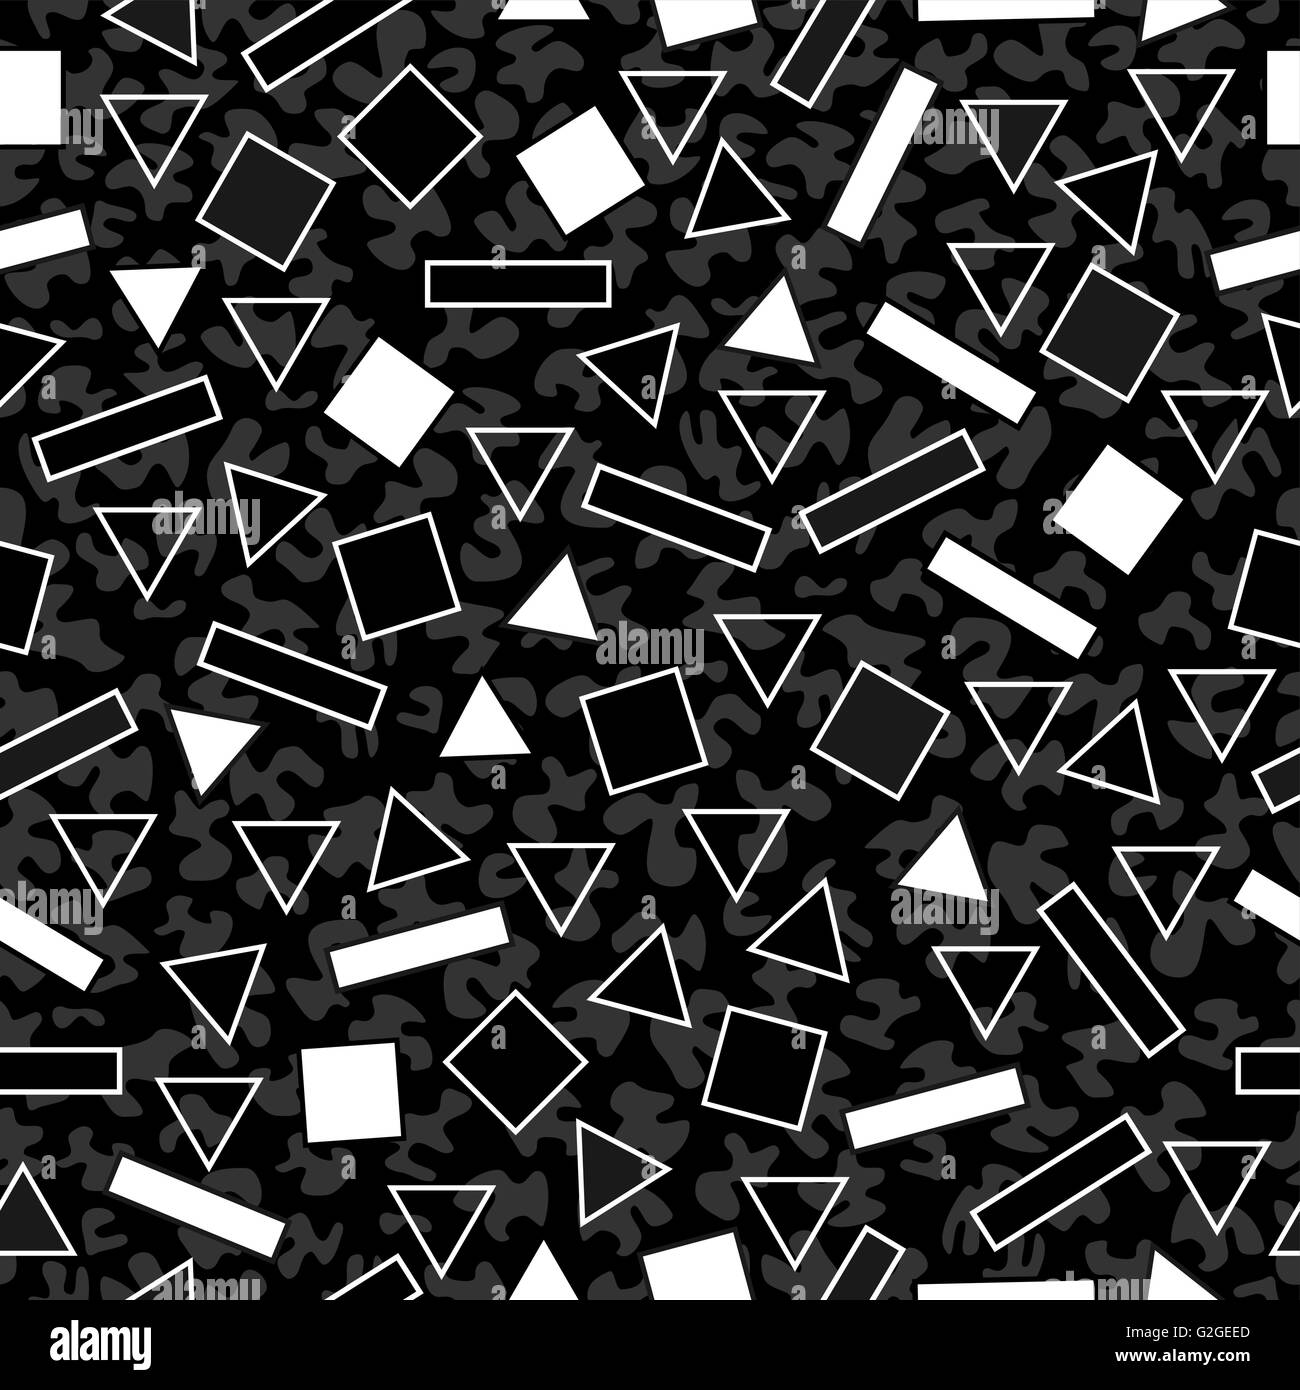 Schwarz / weiß Retro-nahtlose geometrisch im 80er Jahre Mode-Stil von  Memphis. Ideal für Web-Hintergrund, Print oder Stoff. EPS10  Stock-Vektorgrafik - Alamy